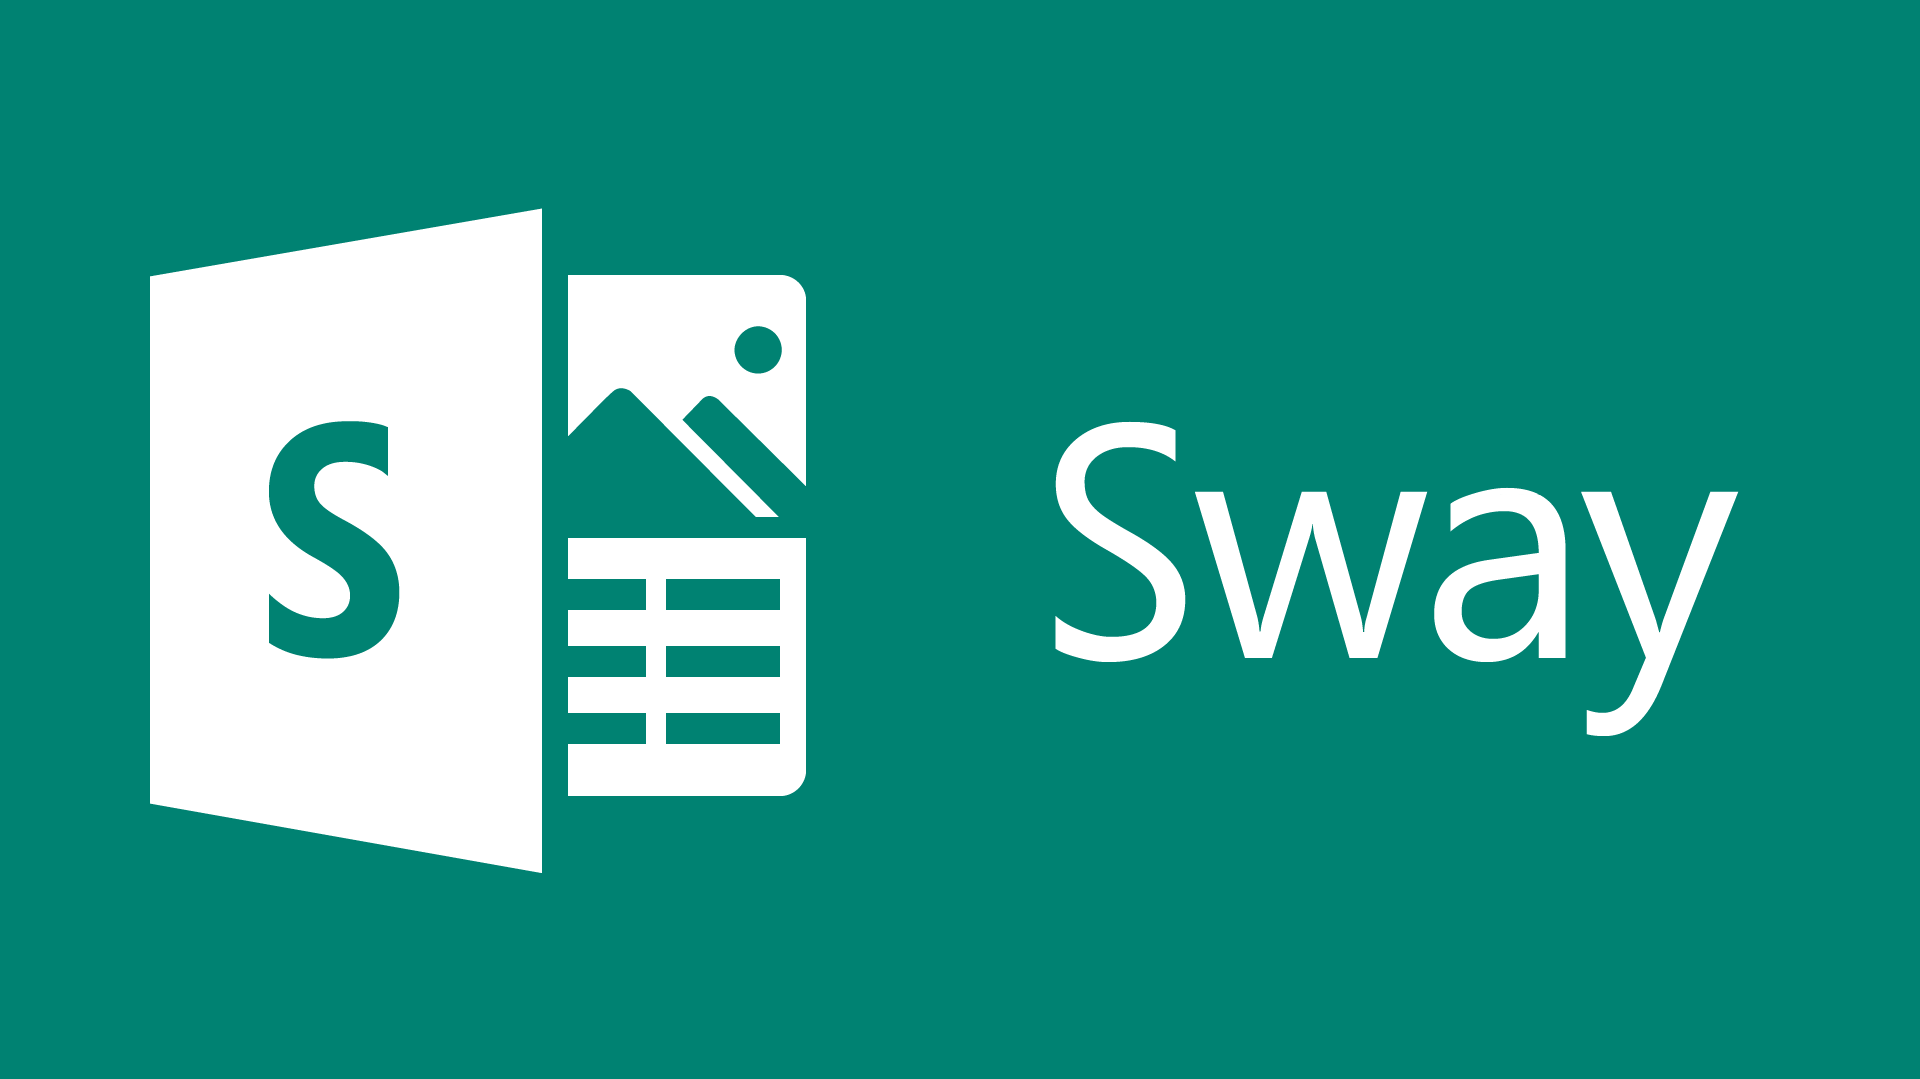 Microsoft Sway Logo - Using Sway: The New Office 365 App - Executive Secretary